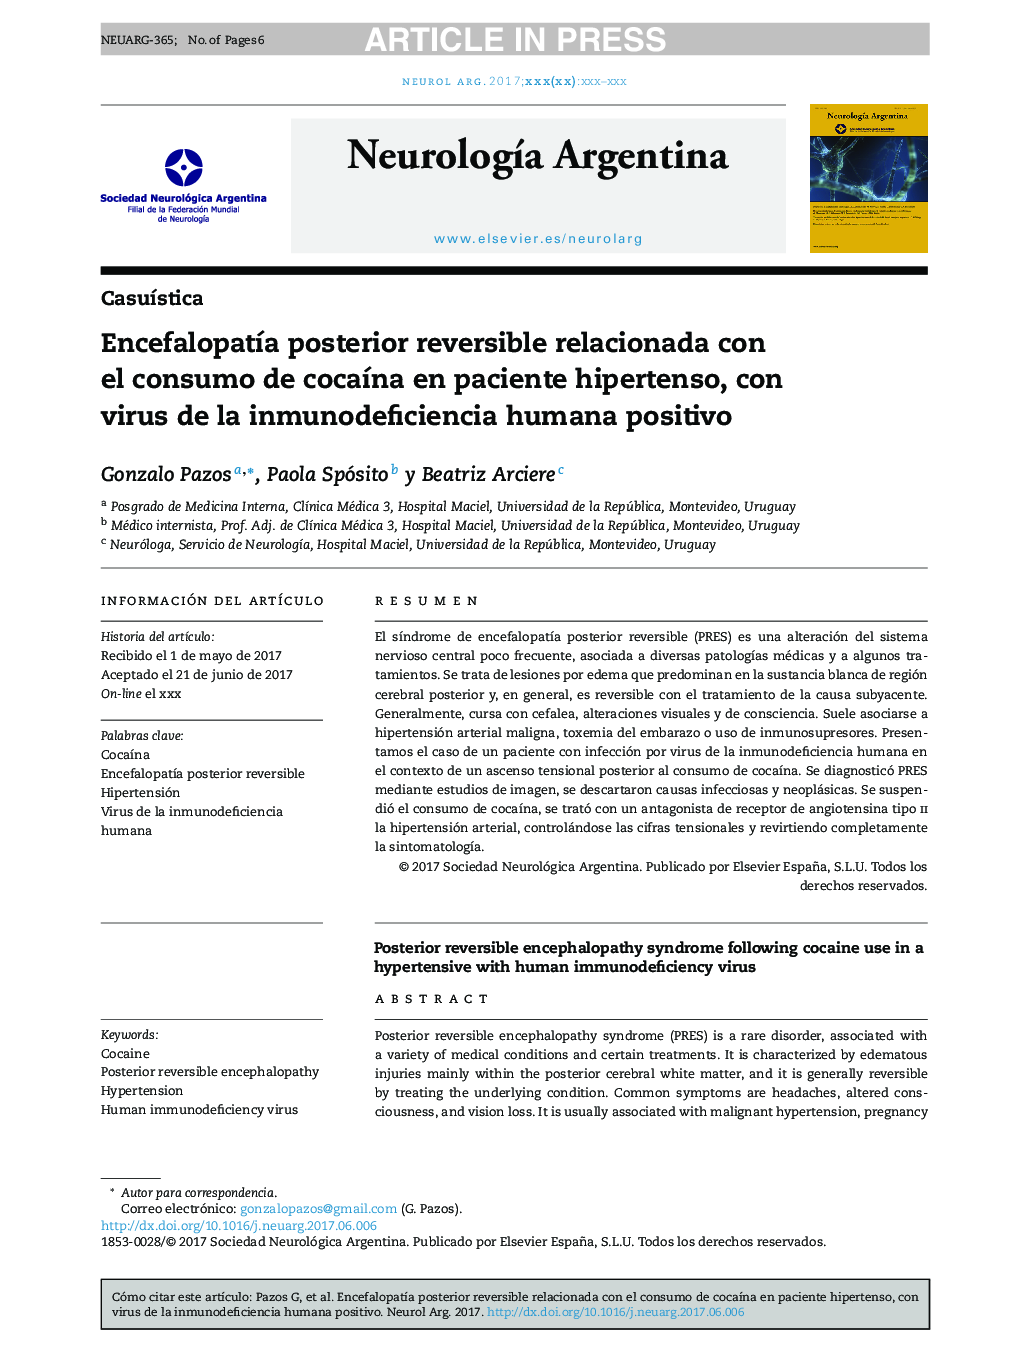 EncefalopatÃ­a posterior reversible relacionada con el consumo de cocaÃ­na en paciente hipertenso, con virus de la inmunodeficiencia humana positivo